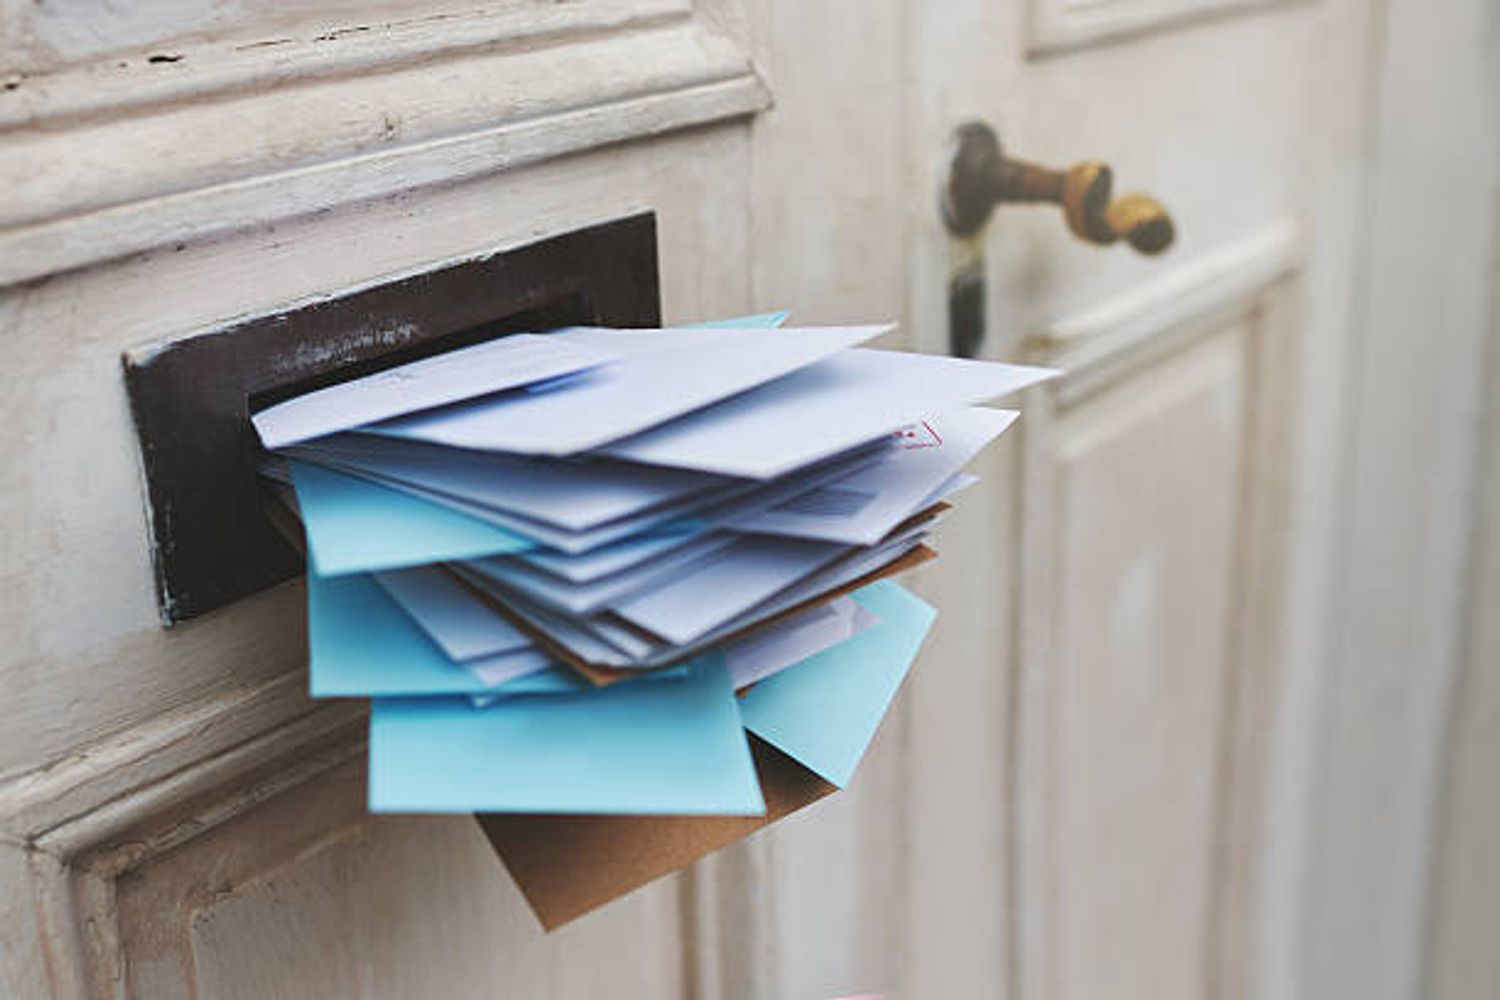 [ SOCIETE ]: Pensez à bien surveiller vos boîtes aux lettres et vos boîtes mail